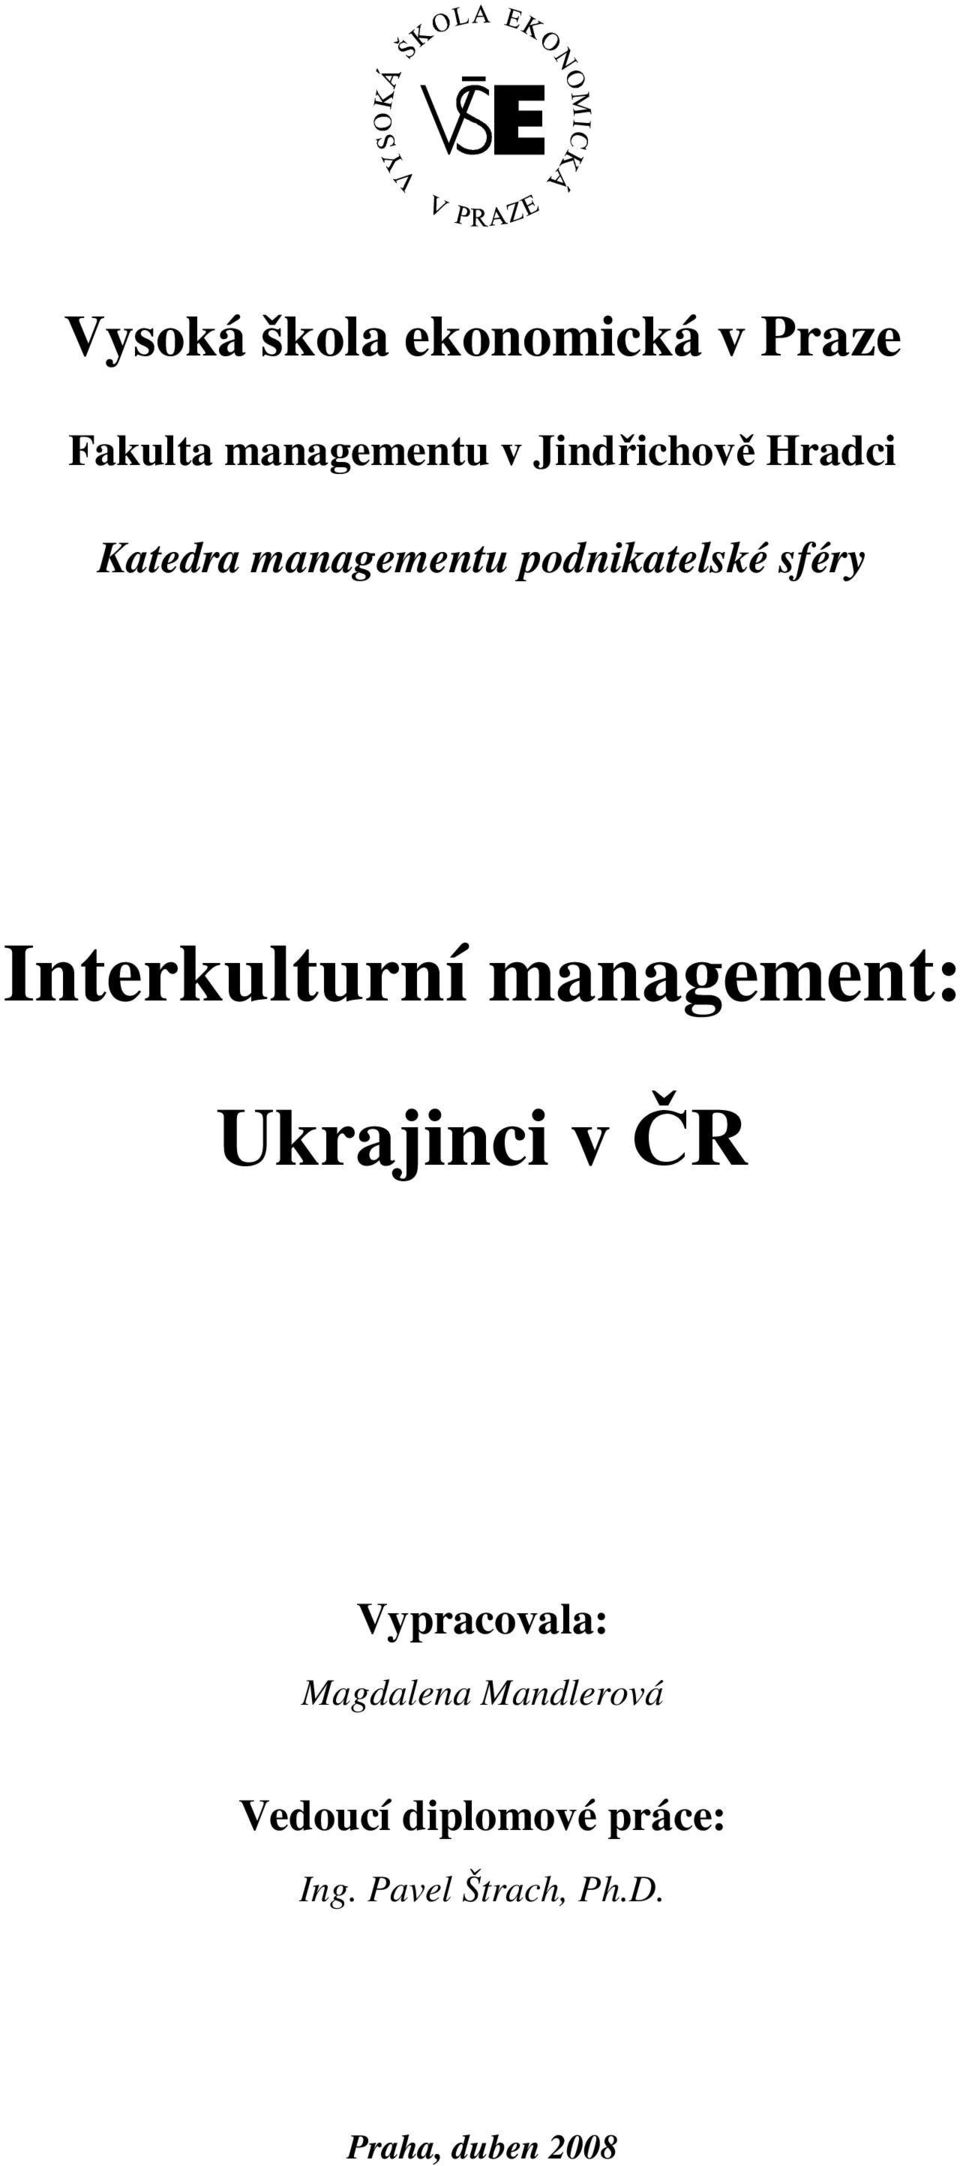 Interkulturní management: Ukrajinci v ČR Vypracovala: Magdalena